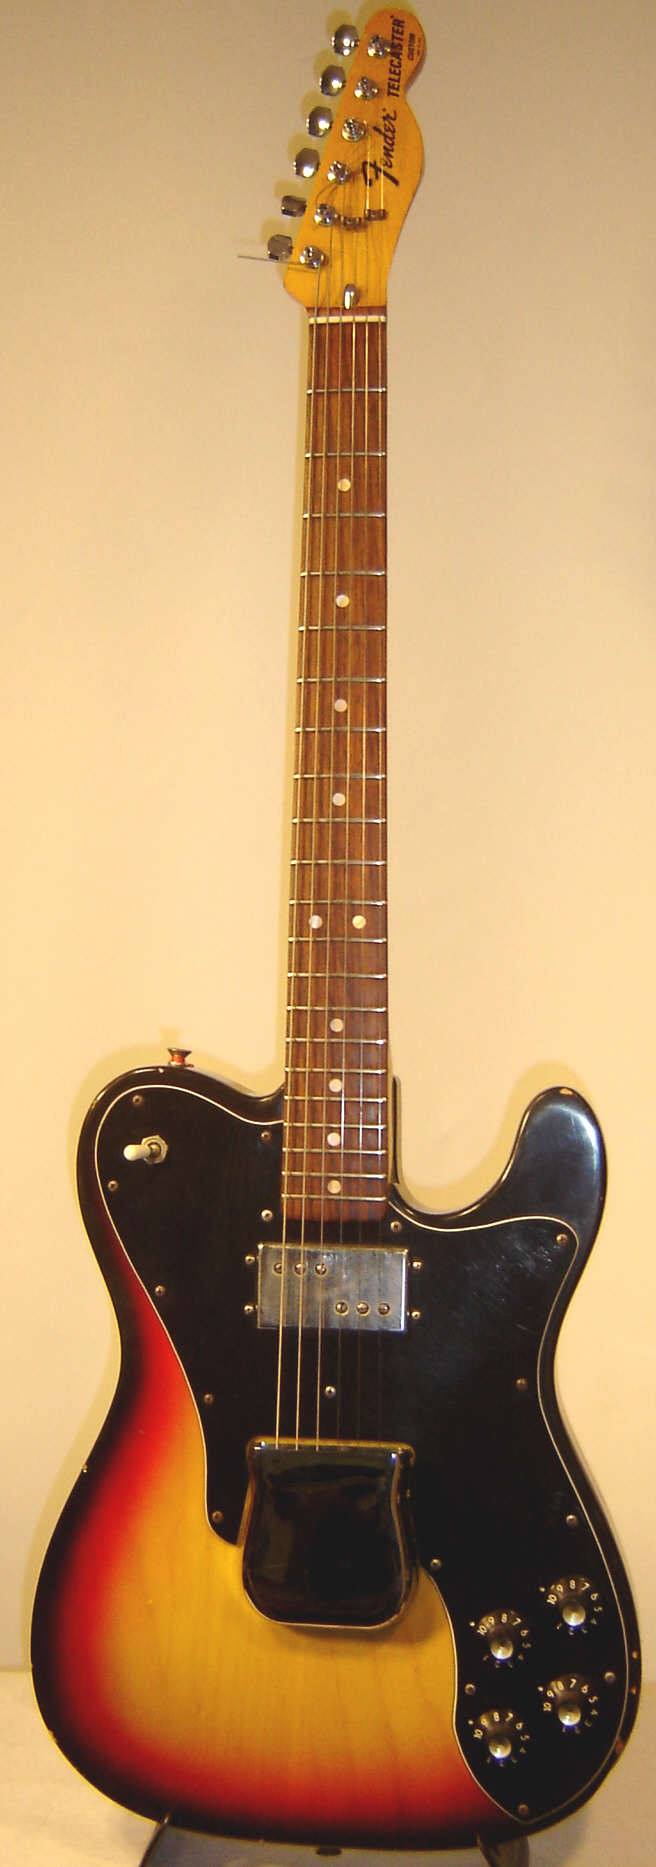 Fender Telecaster Custom 1976 a.jpg